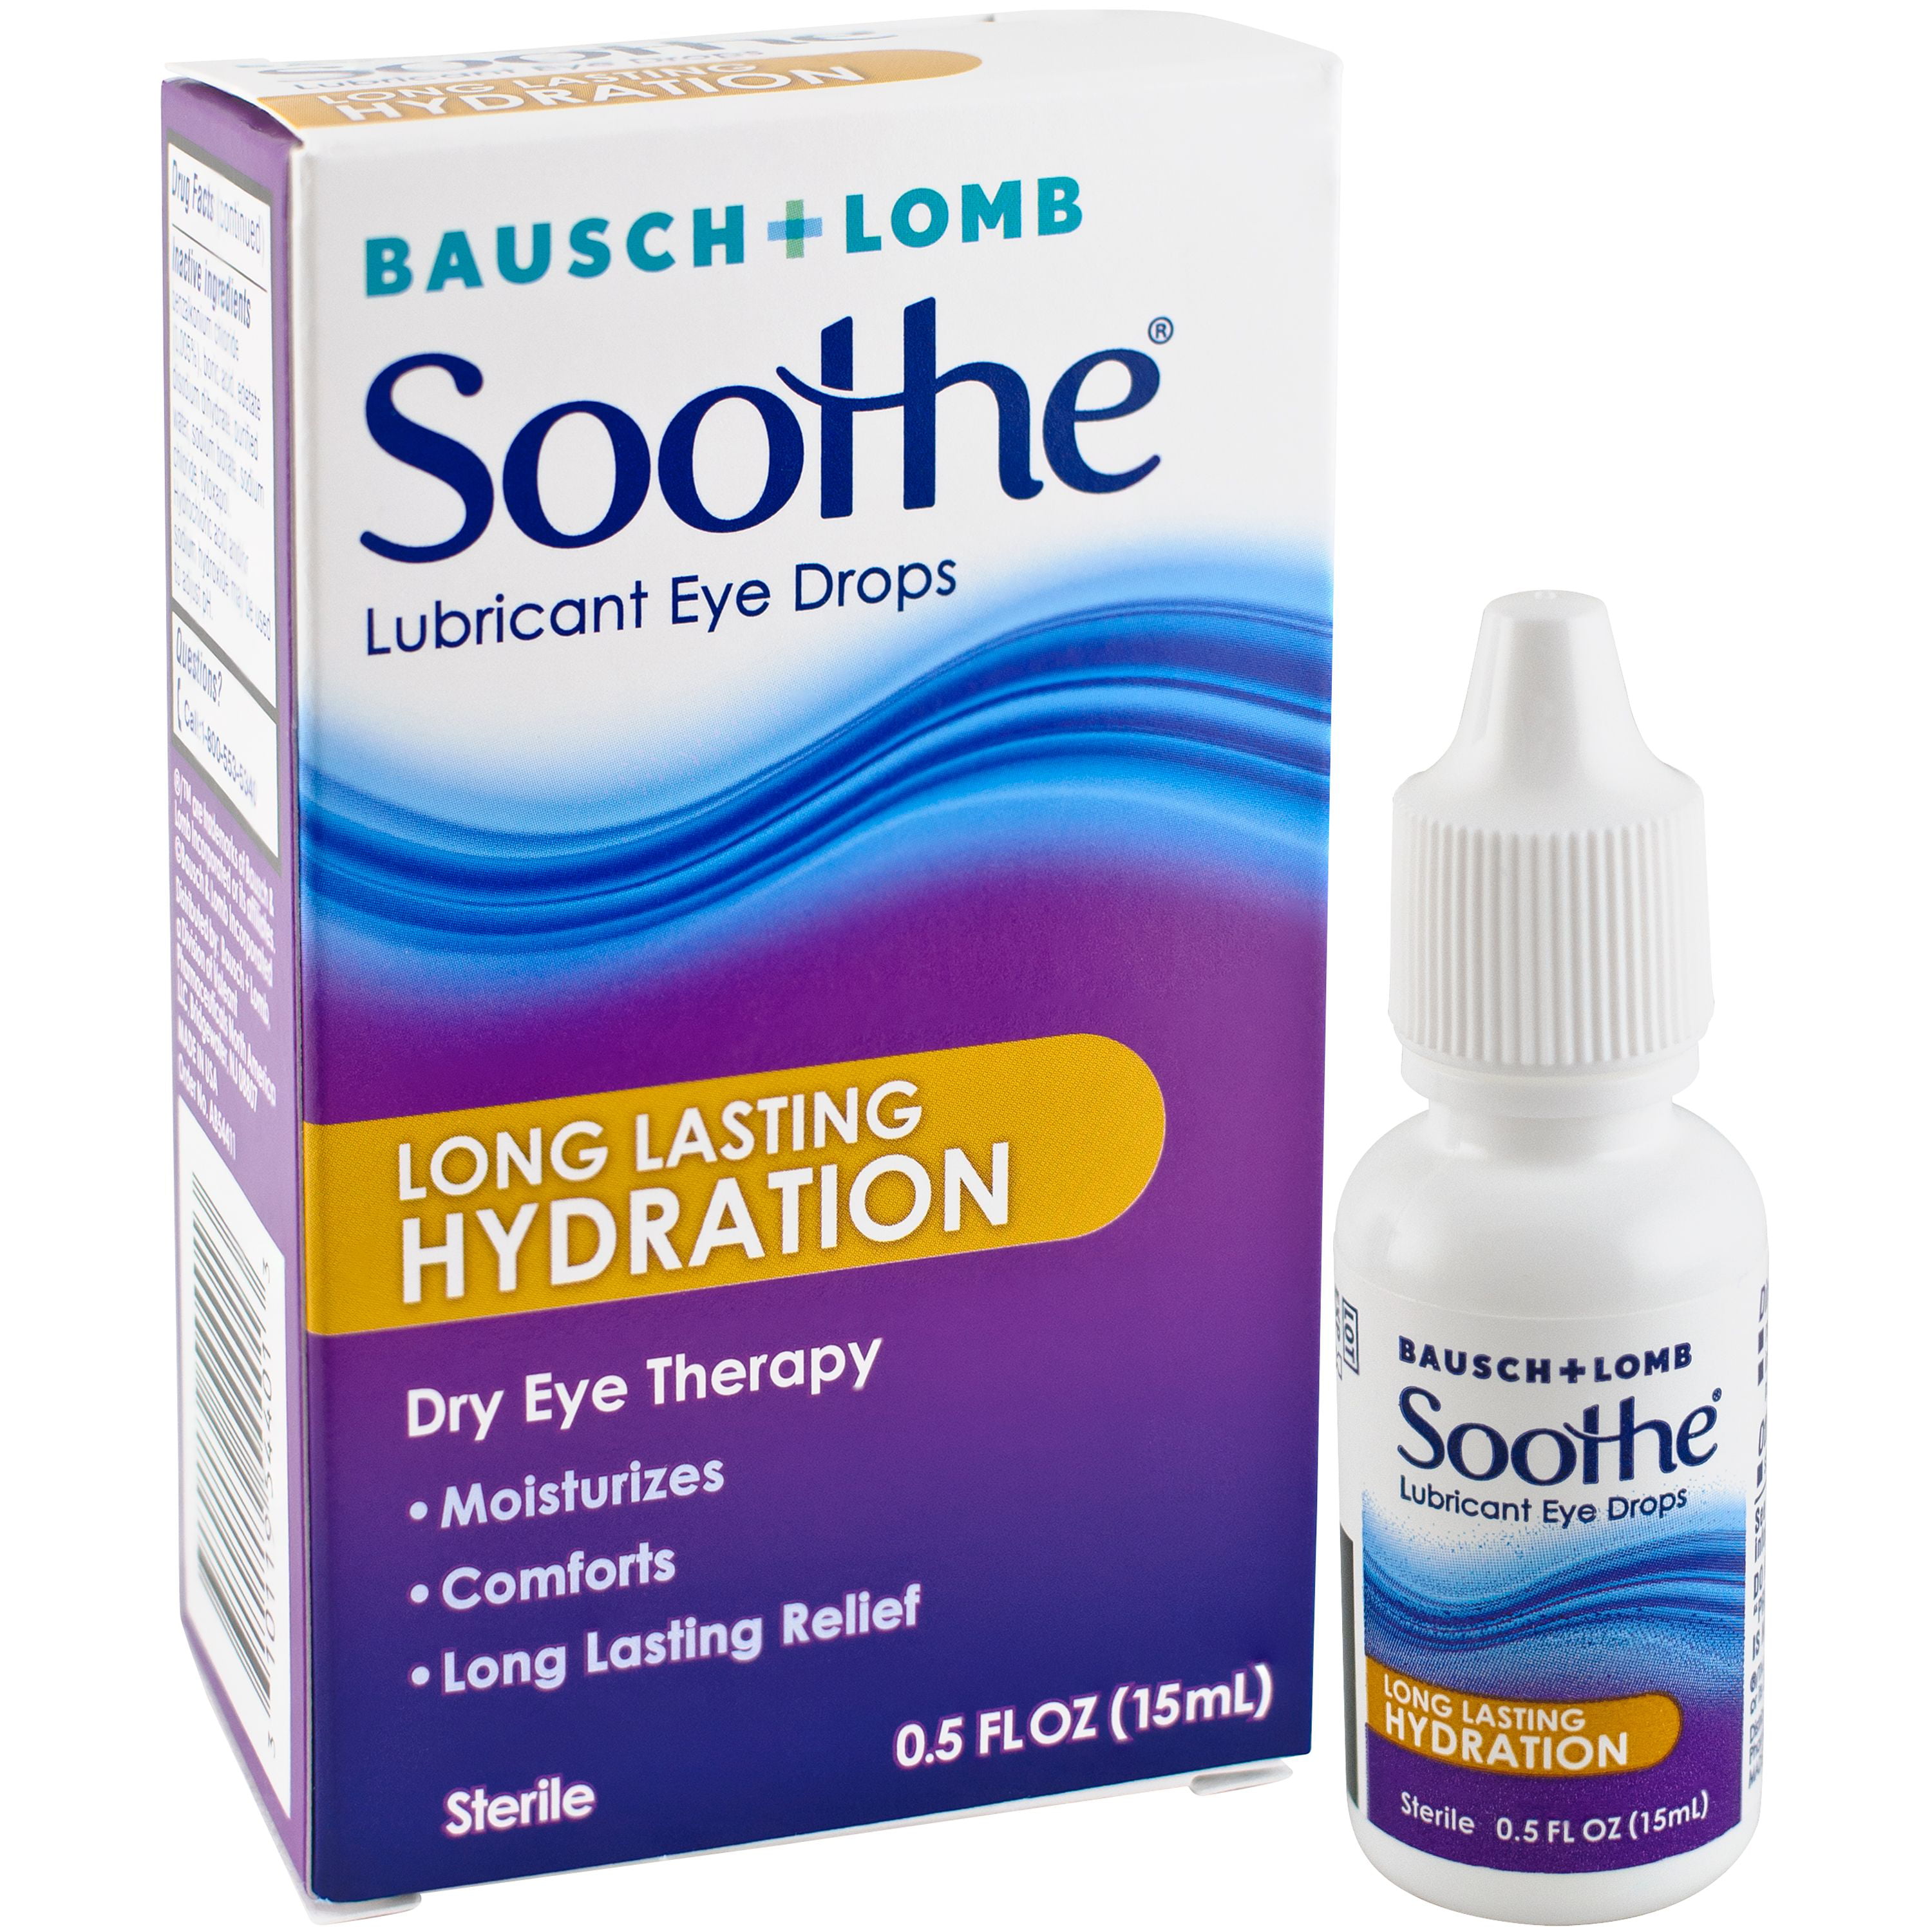 bausch-lomb-soothe-eye-drops-long-lasting-hydration-0-5-fl-oz